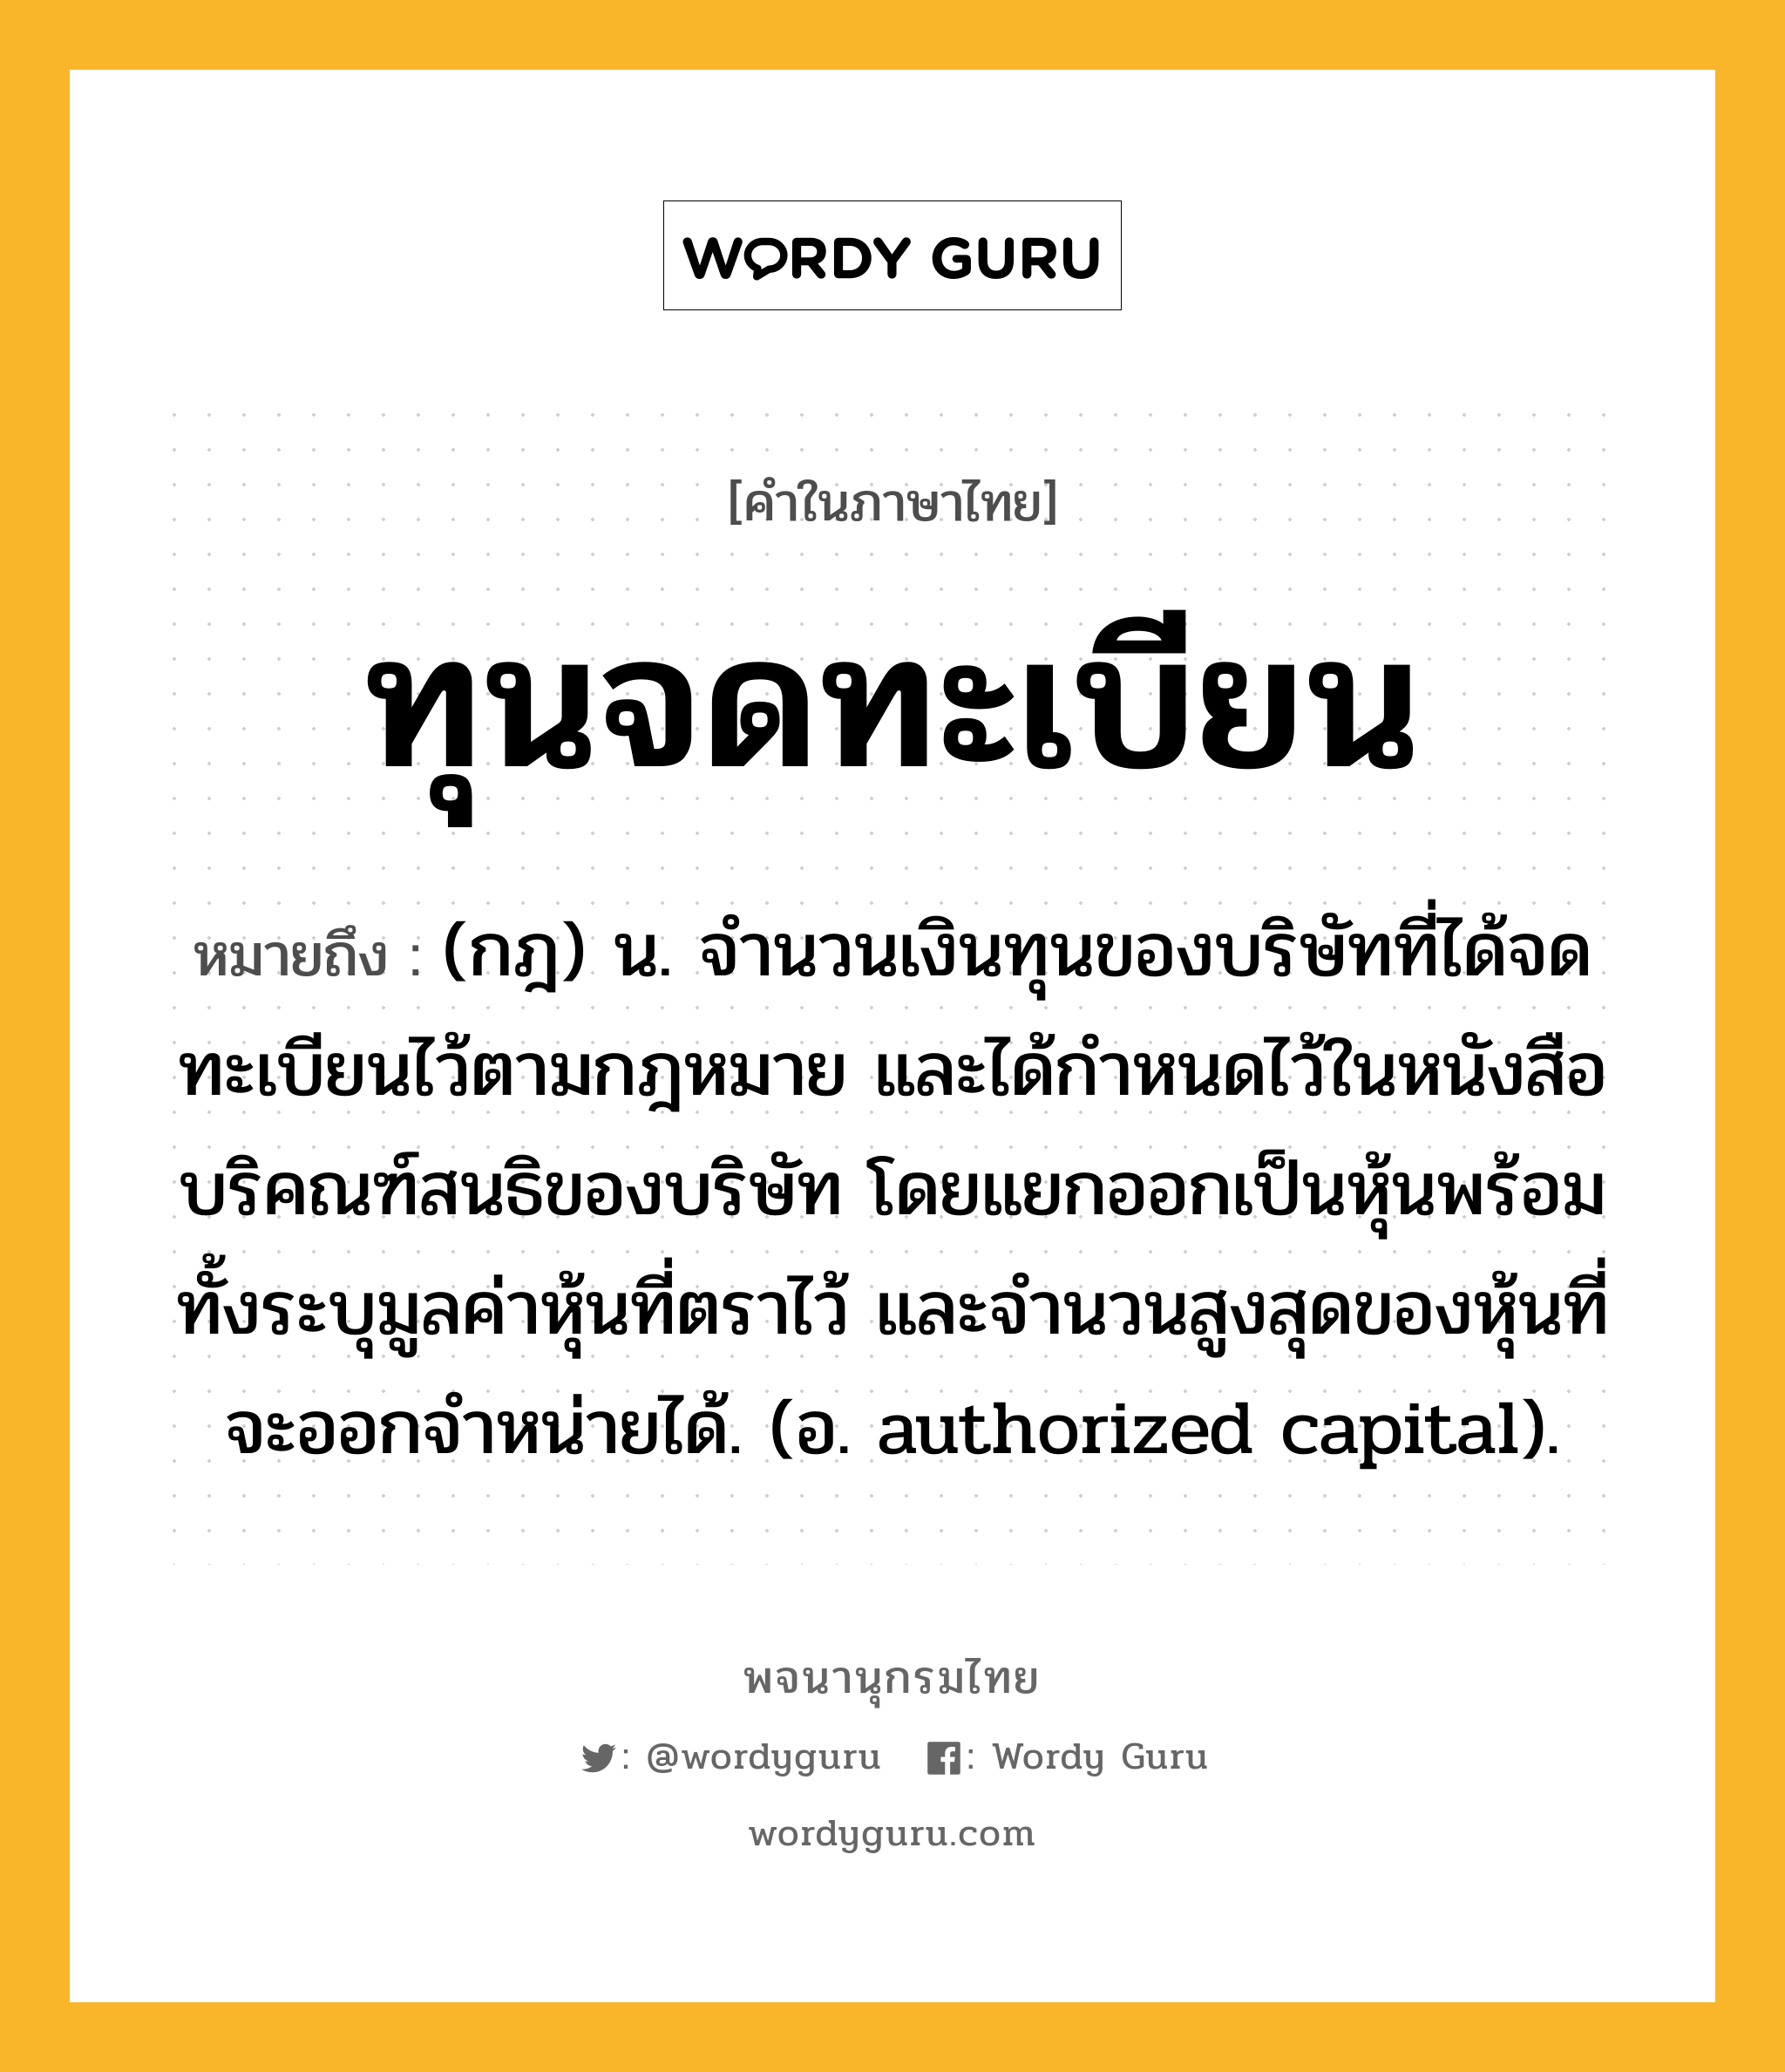 ทุนจดทะเบียน หมายถึงอะไร?, คำในภาษาไทย ทุนจดทะเบียน หมายถึง (กฎ) น. จํานวนเงินทุนของบริษัทที่ได้จดทะเบียนไว้ตามกฎหมาย และได้กําหนดไว้ในหนังสือบริคณฑ์สนธิของบริษัท โดยแยกออกเป็นหุ้นพร้อมทั้งระบุมูลค่าหุ้นที่ตราไว้ และจํานวนสูงสุดของหุ้นที่จะออกจําหน่ายได้. (อ. authorized capital).